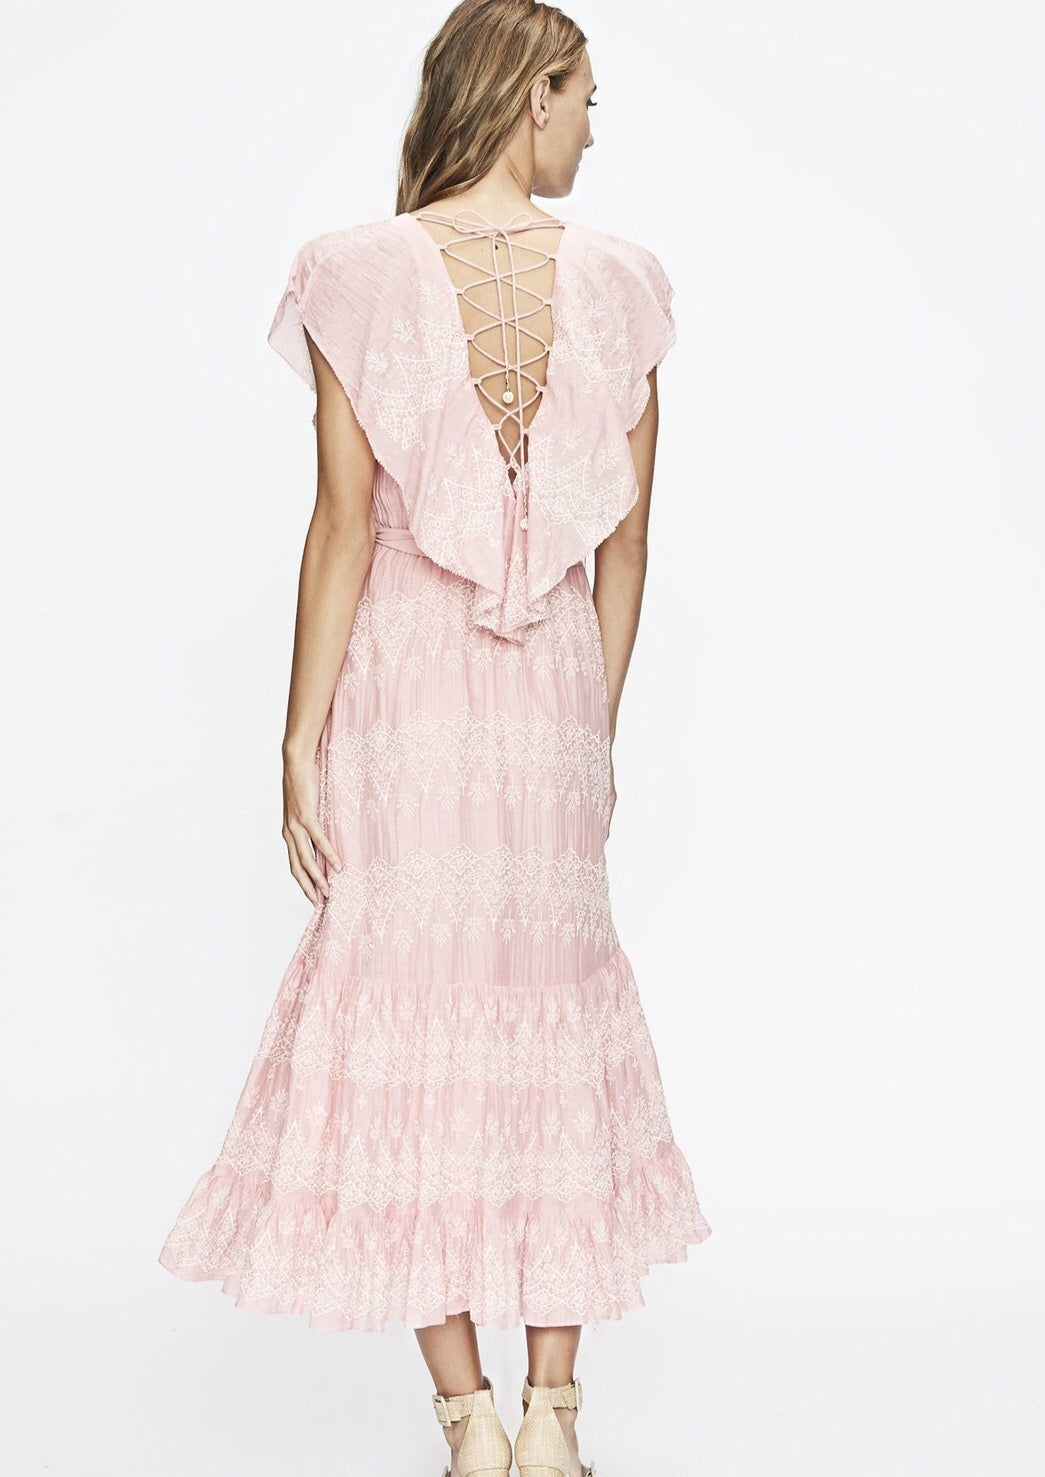 Pink Ruffle Lace Up Dress- Sizes M & L - Milou Palm Beach